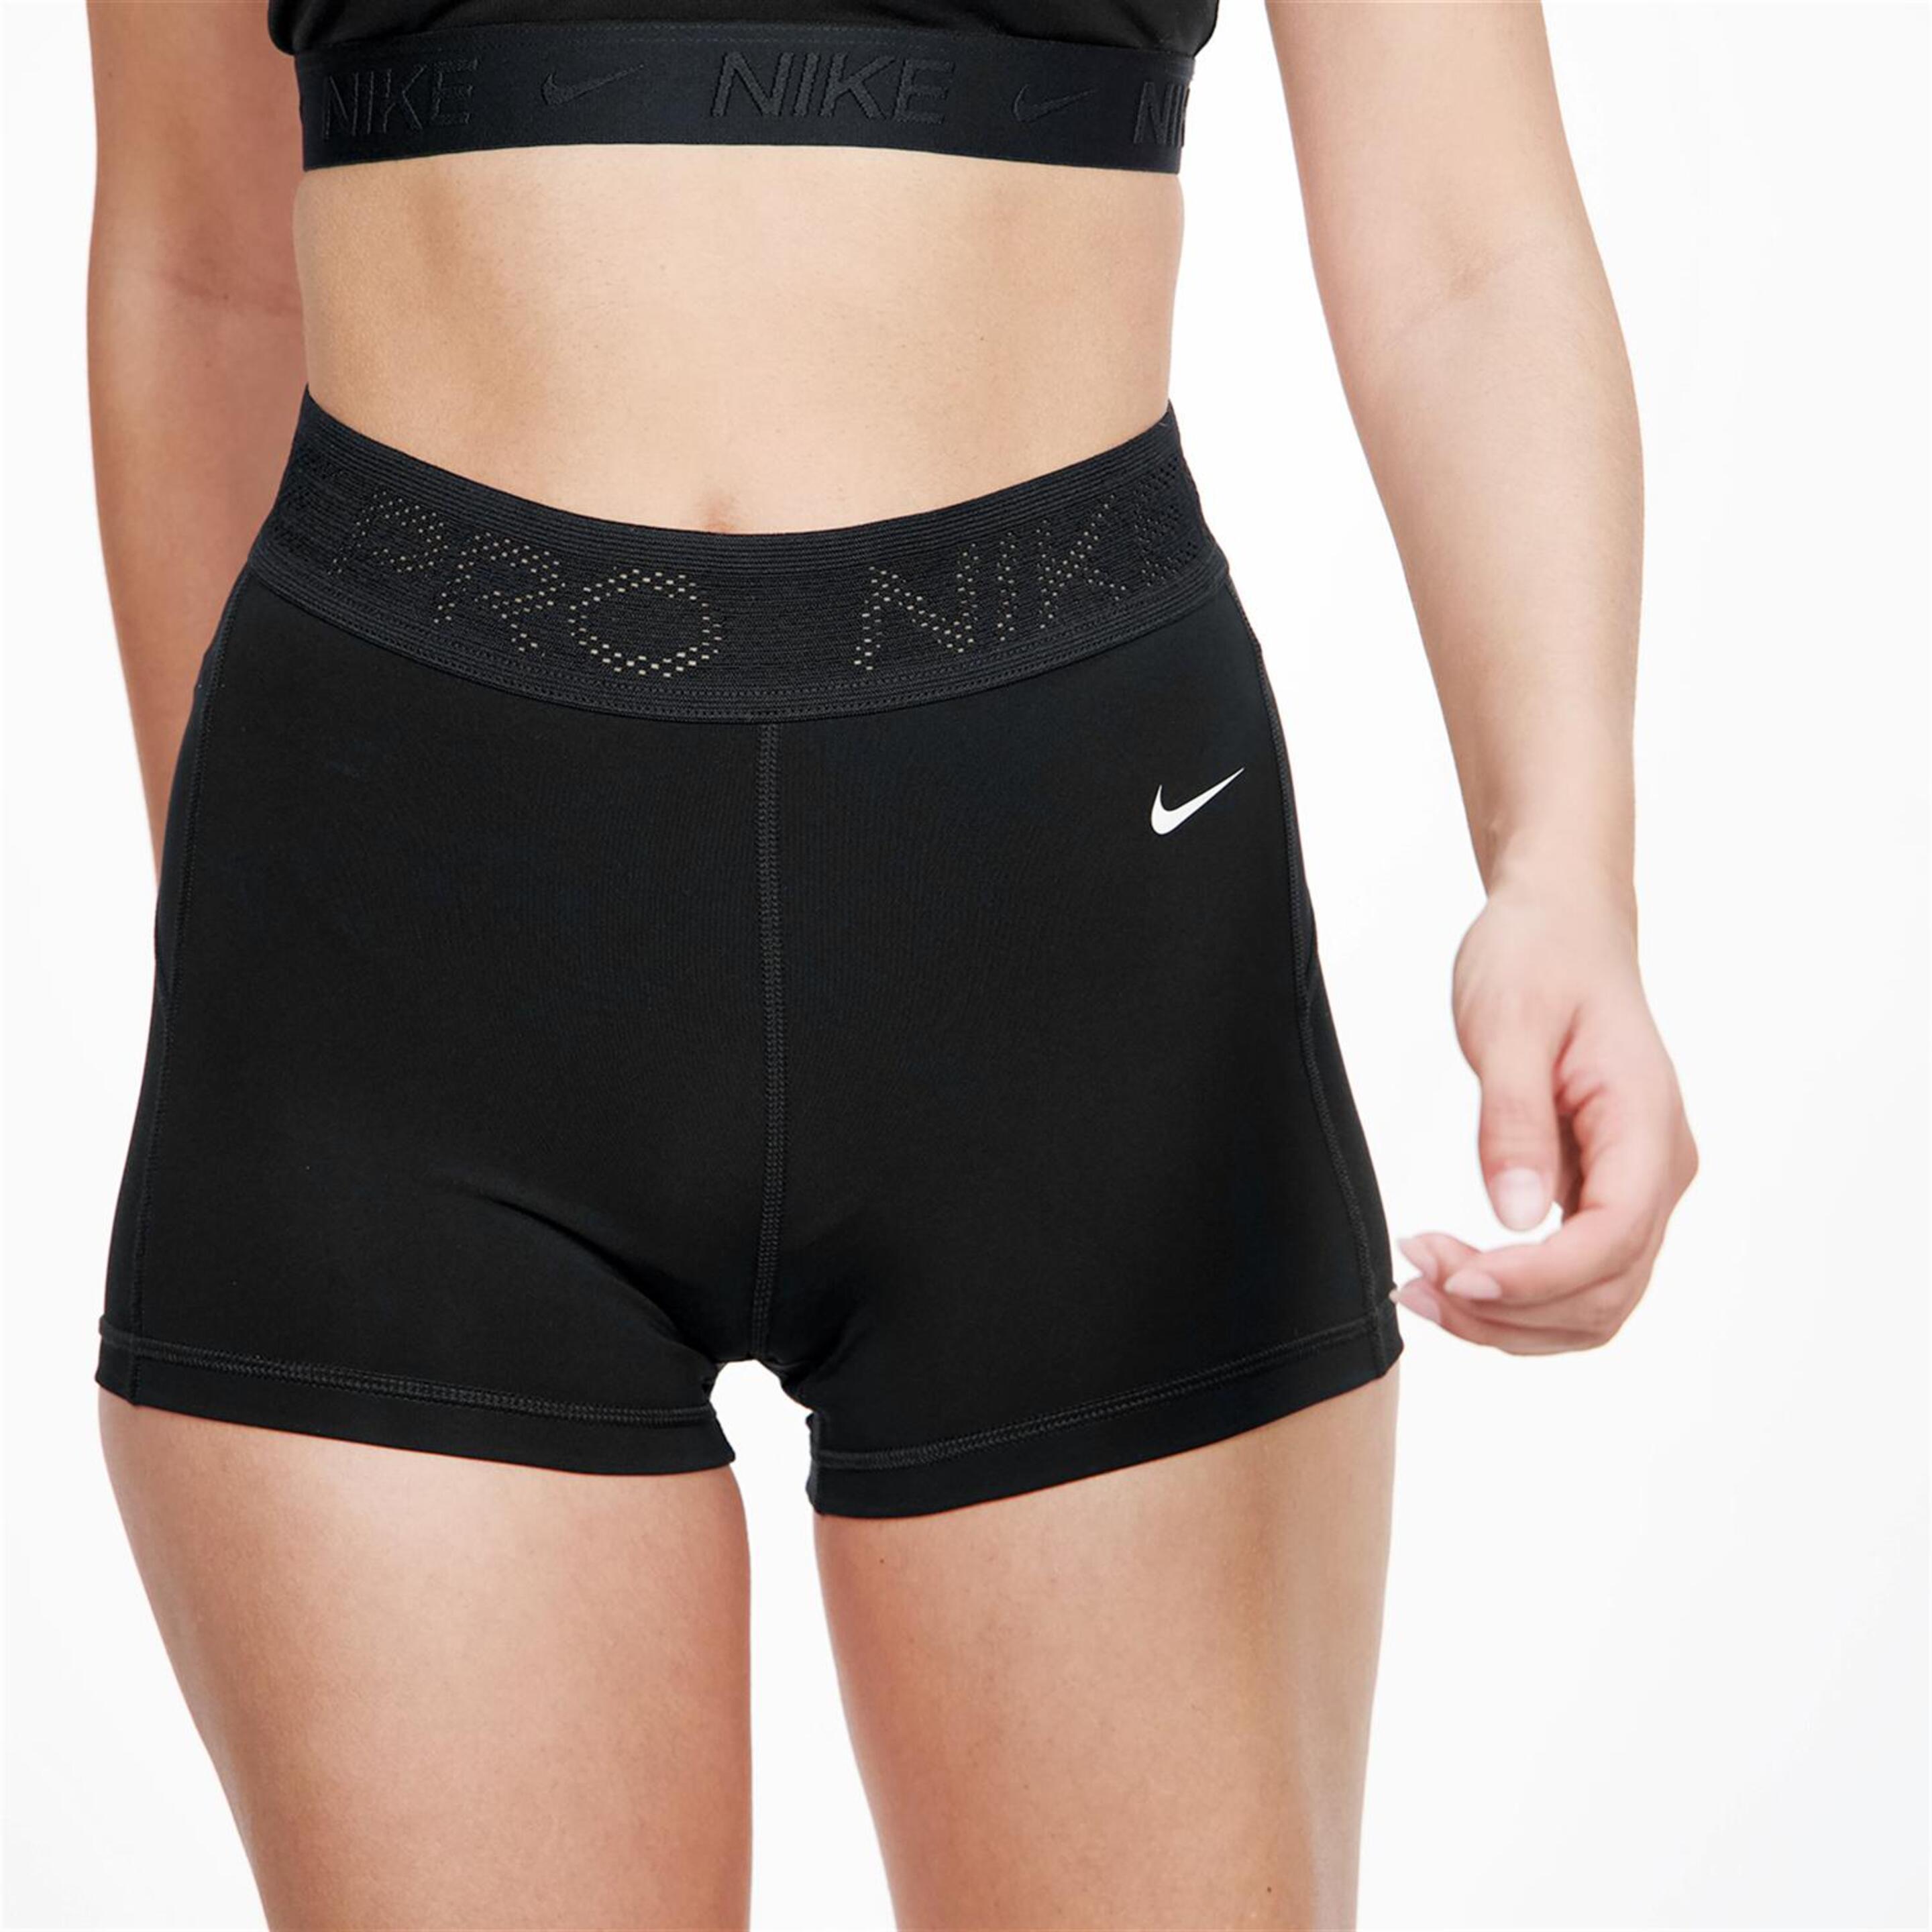 Nike Performance - Negro - Mallas Cortas Mujer